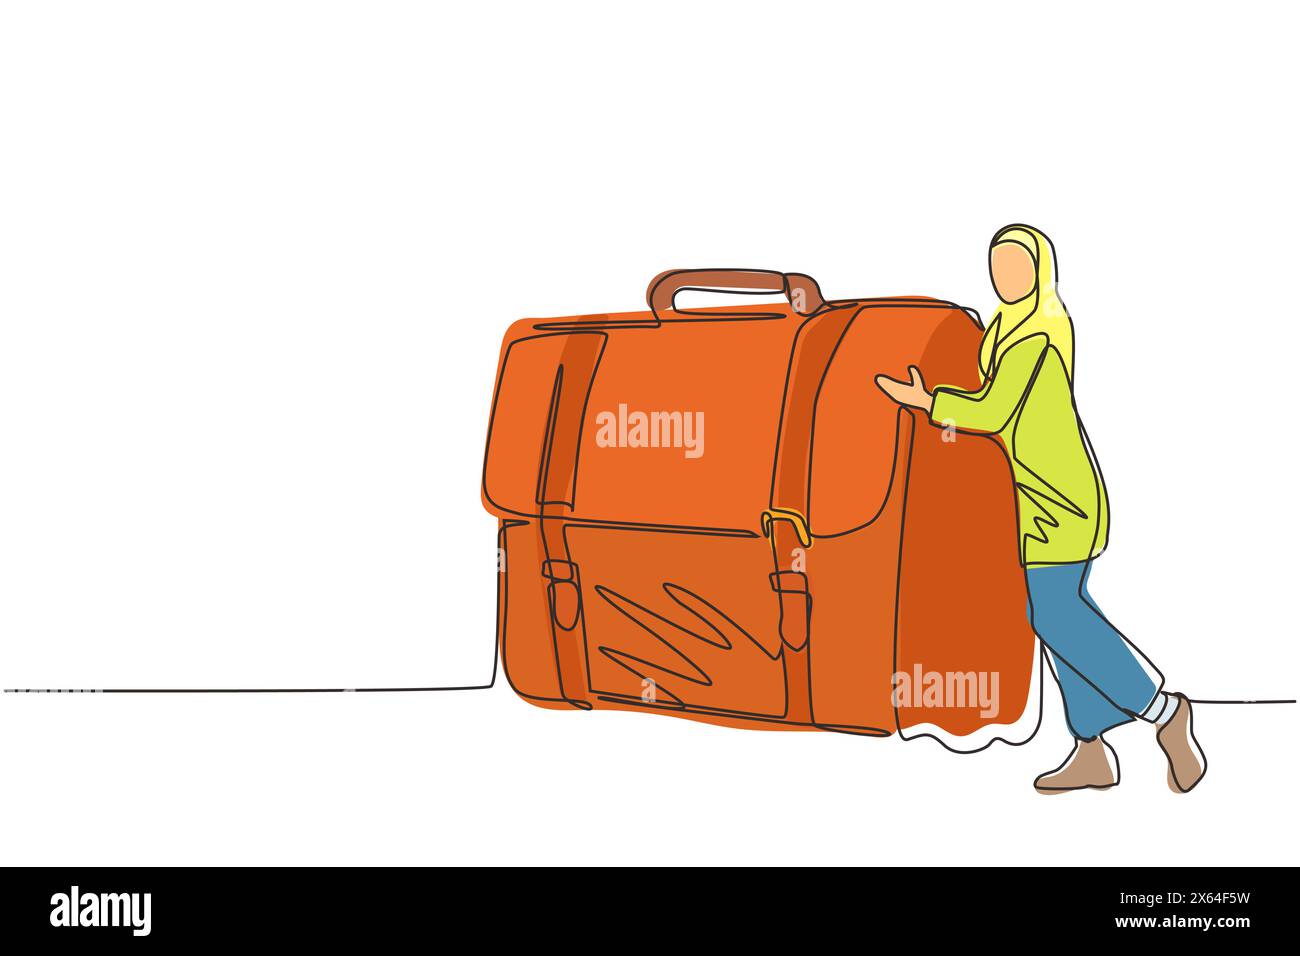 Continu une ligne dessinant joyeuse femme d'affaires arabe embrasse la valise avec de l'argent. Patron arabe et caisse avec de l'argent. Objectif de plaisir professionnel réussi. Si Illustration de Vecteur